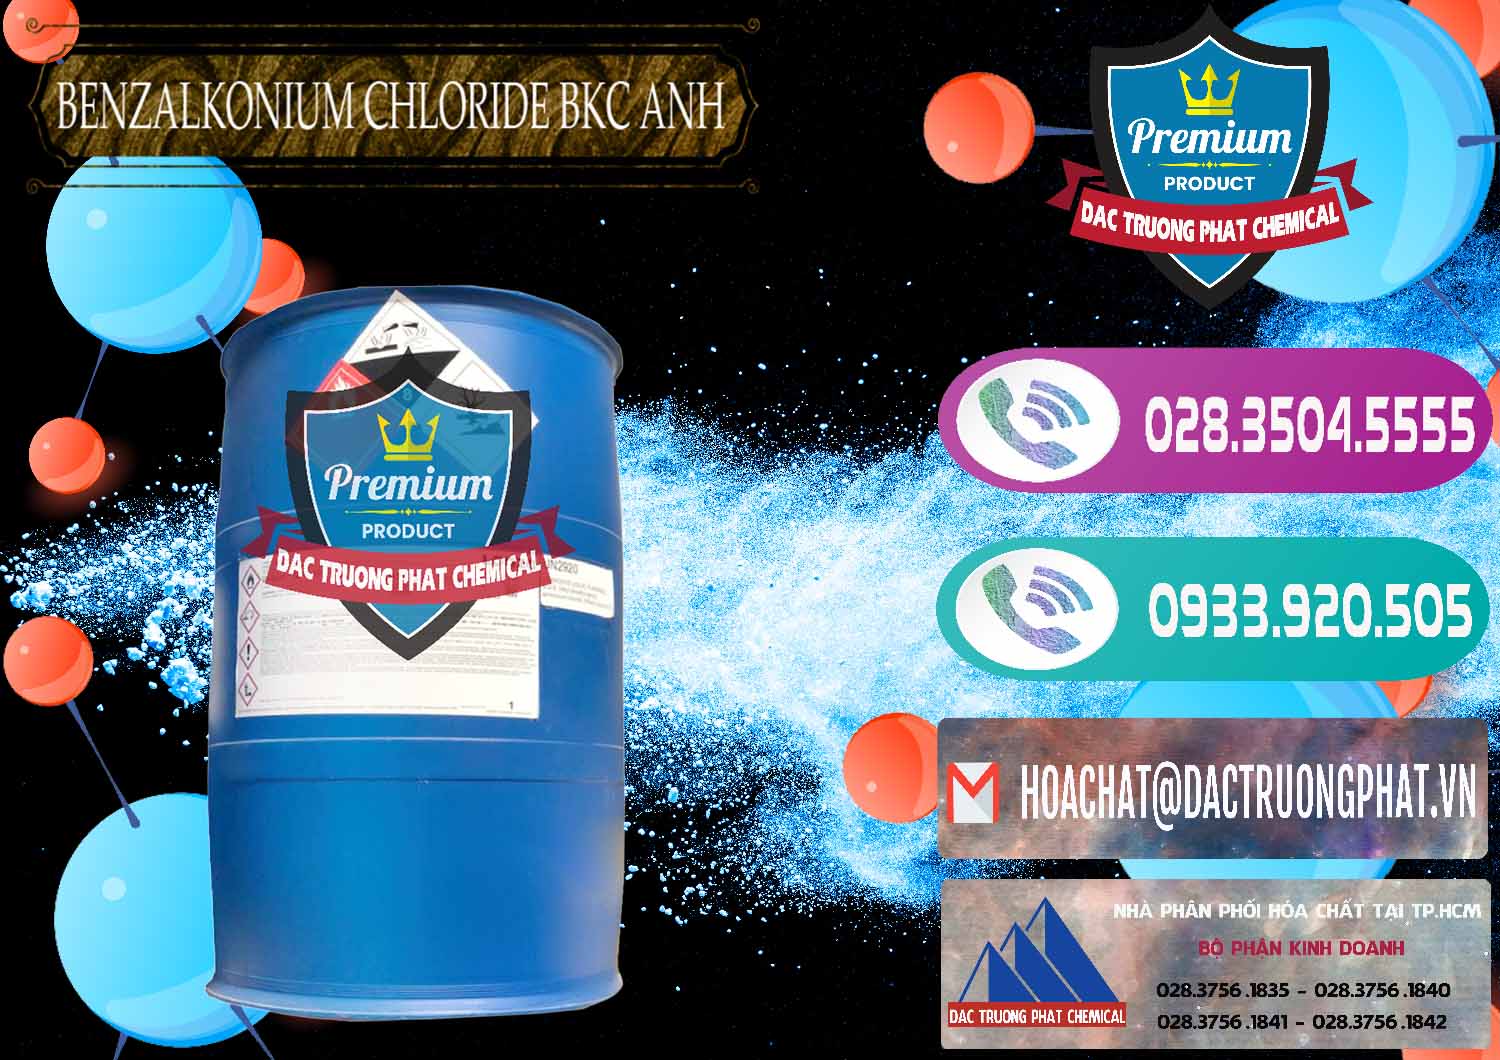 Cty chuyên bán ( phân phối ) BKC - Benzalkonium Chloride 80% Anh Quốc Uk Kingdoms - 0457 - Công ty nhập khẩu ( phân phối ) hóa chất tại TP.HCM - hoachatxulynuoc.com